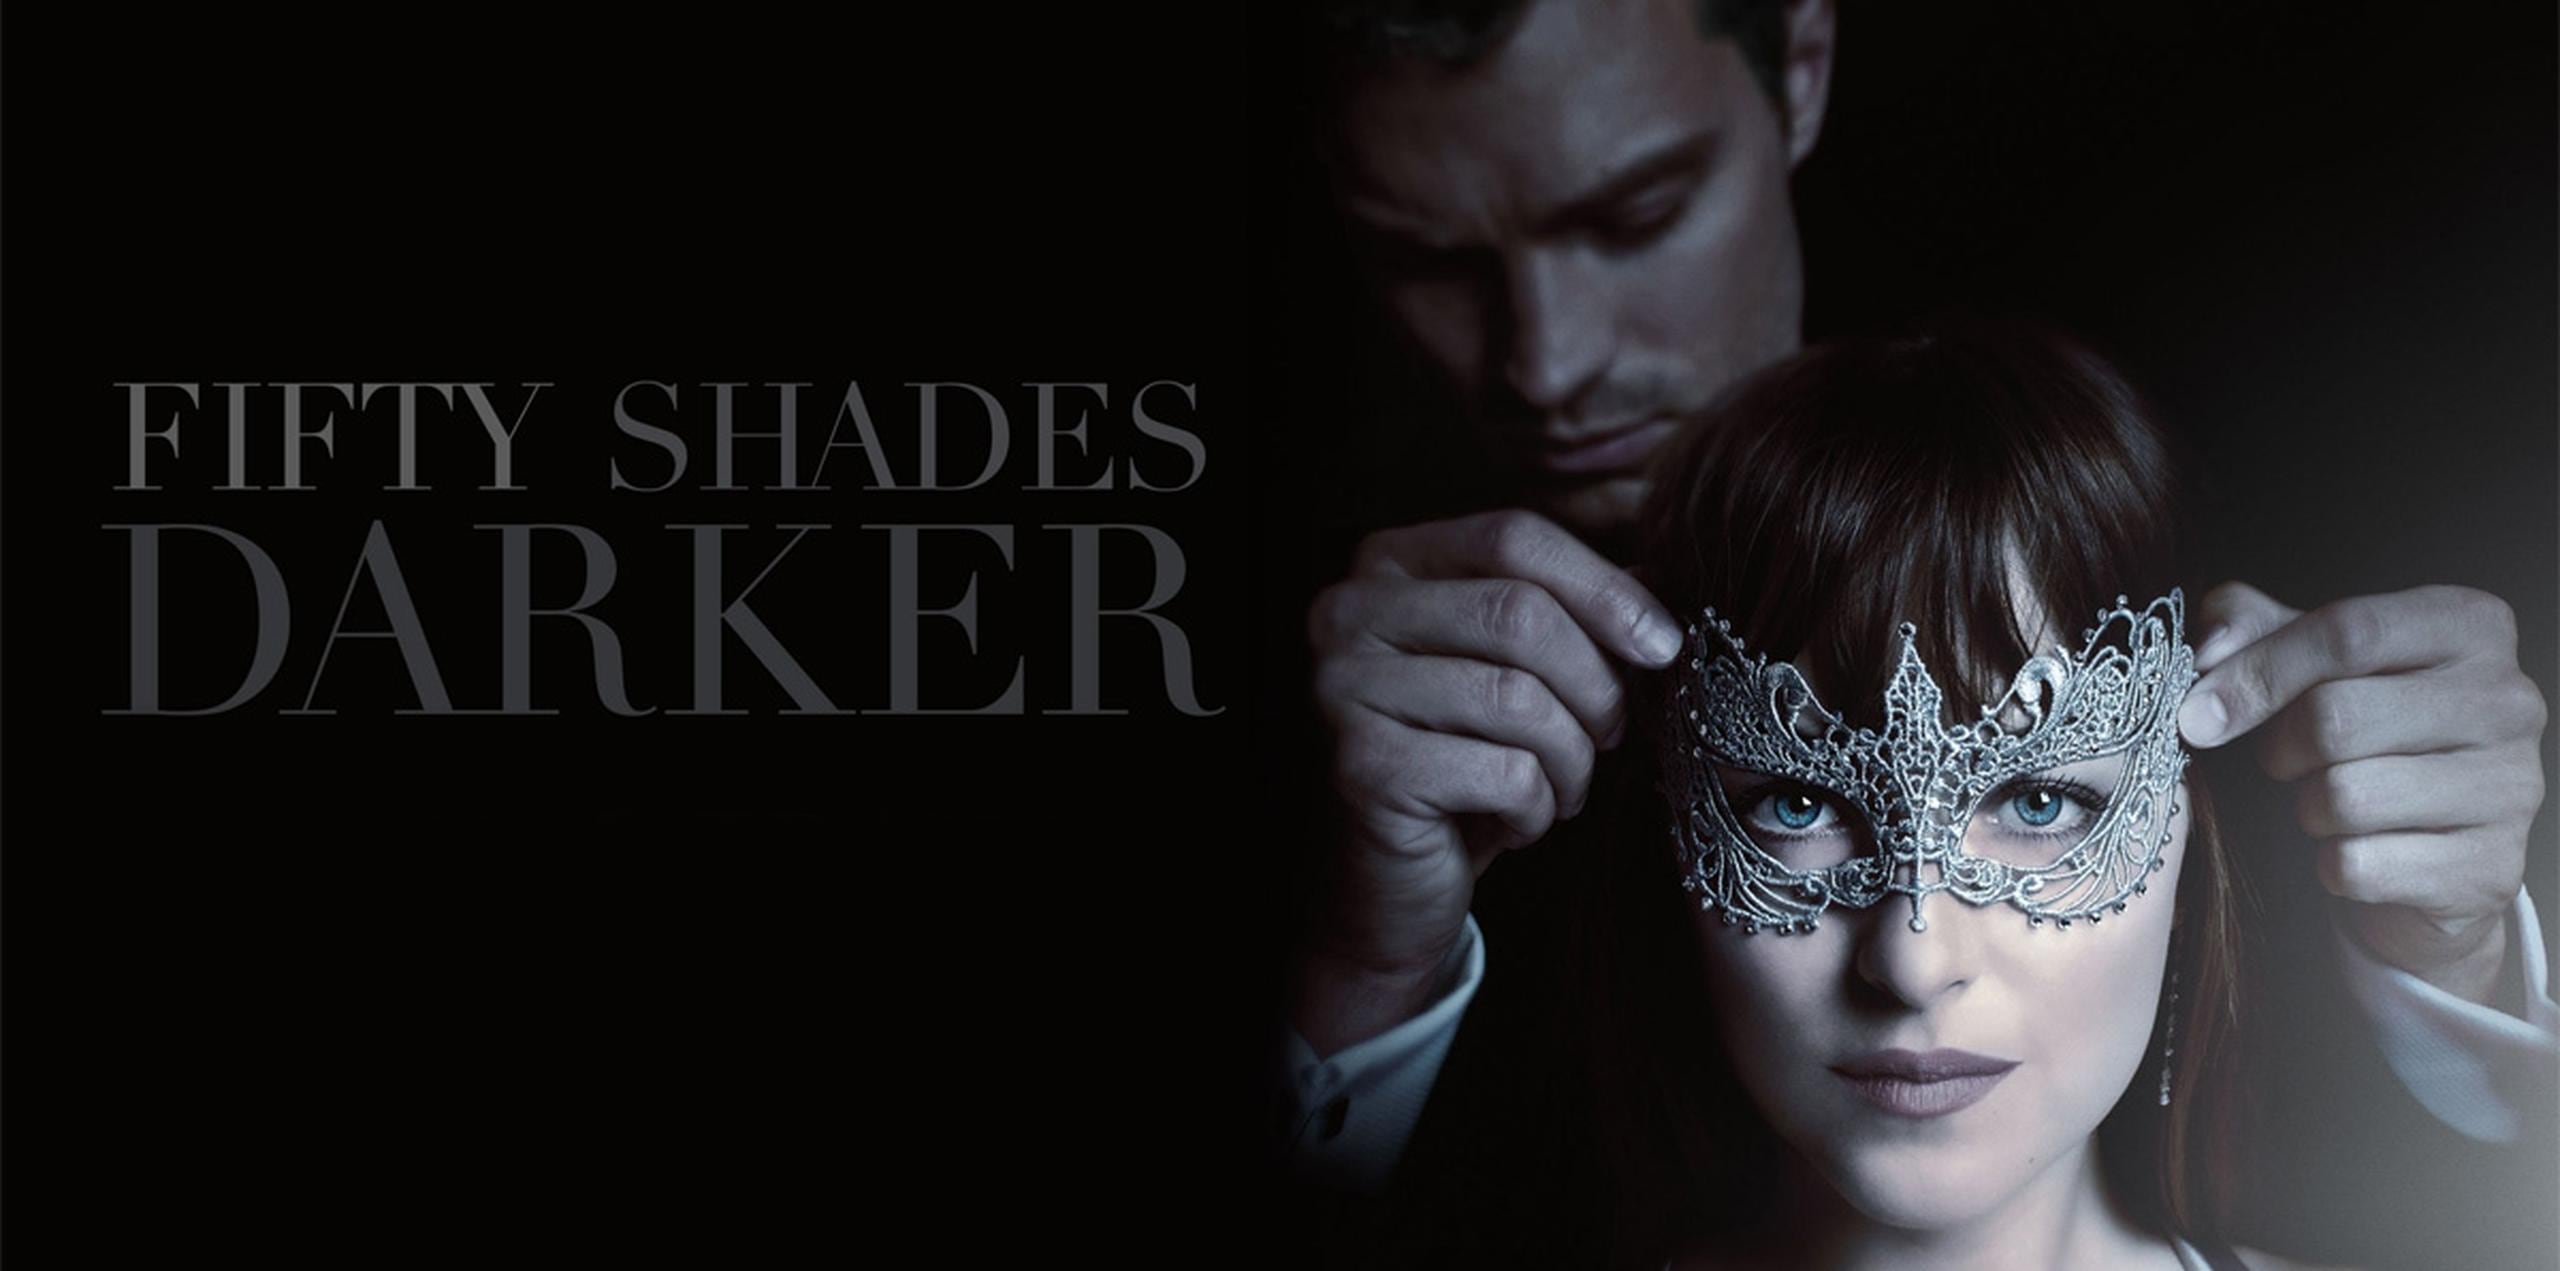 "Fifty Shades Darker", que llegará a los cines en febrero de 2017, ha sido dirigida por James Foley y cuenta de nuevo con los actores Jamie Dornan y Dakota Johnson en los papeles de Christian Grey y Anastasia Steele, respectivamente.